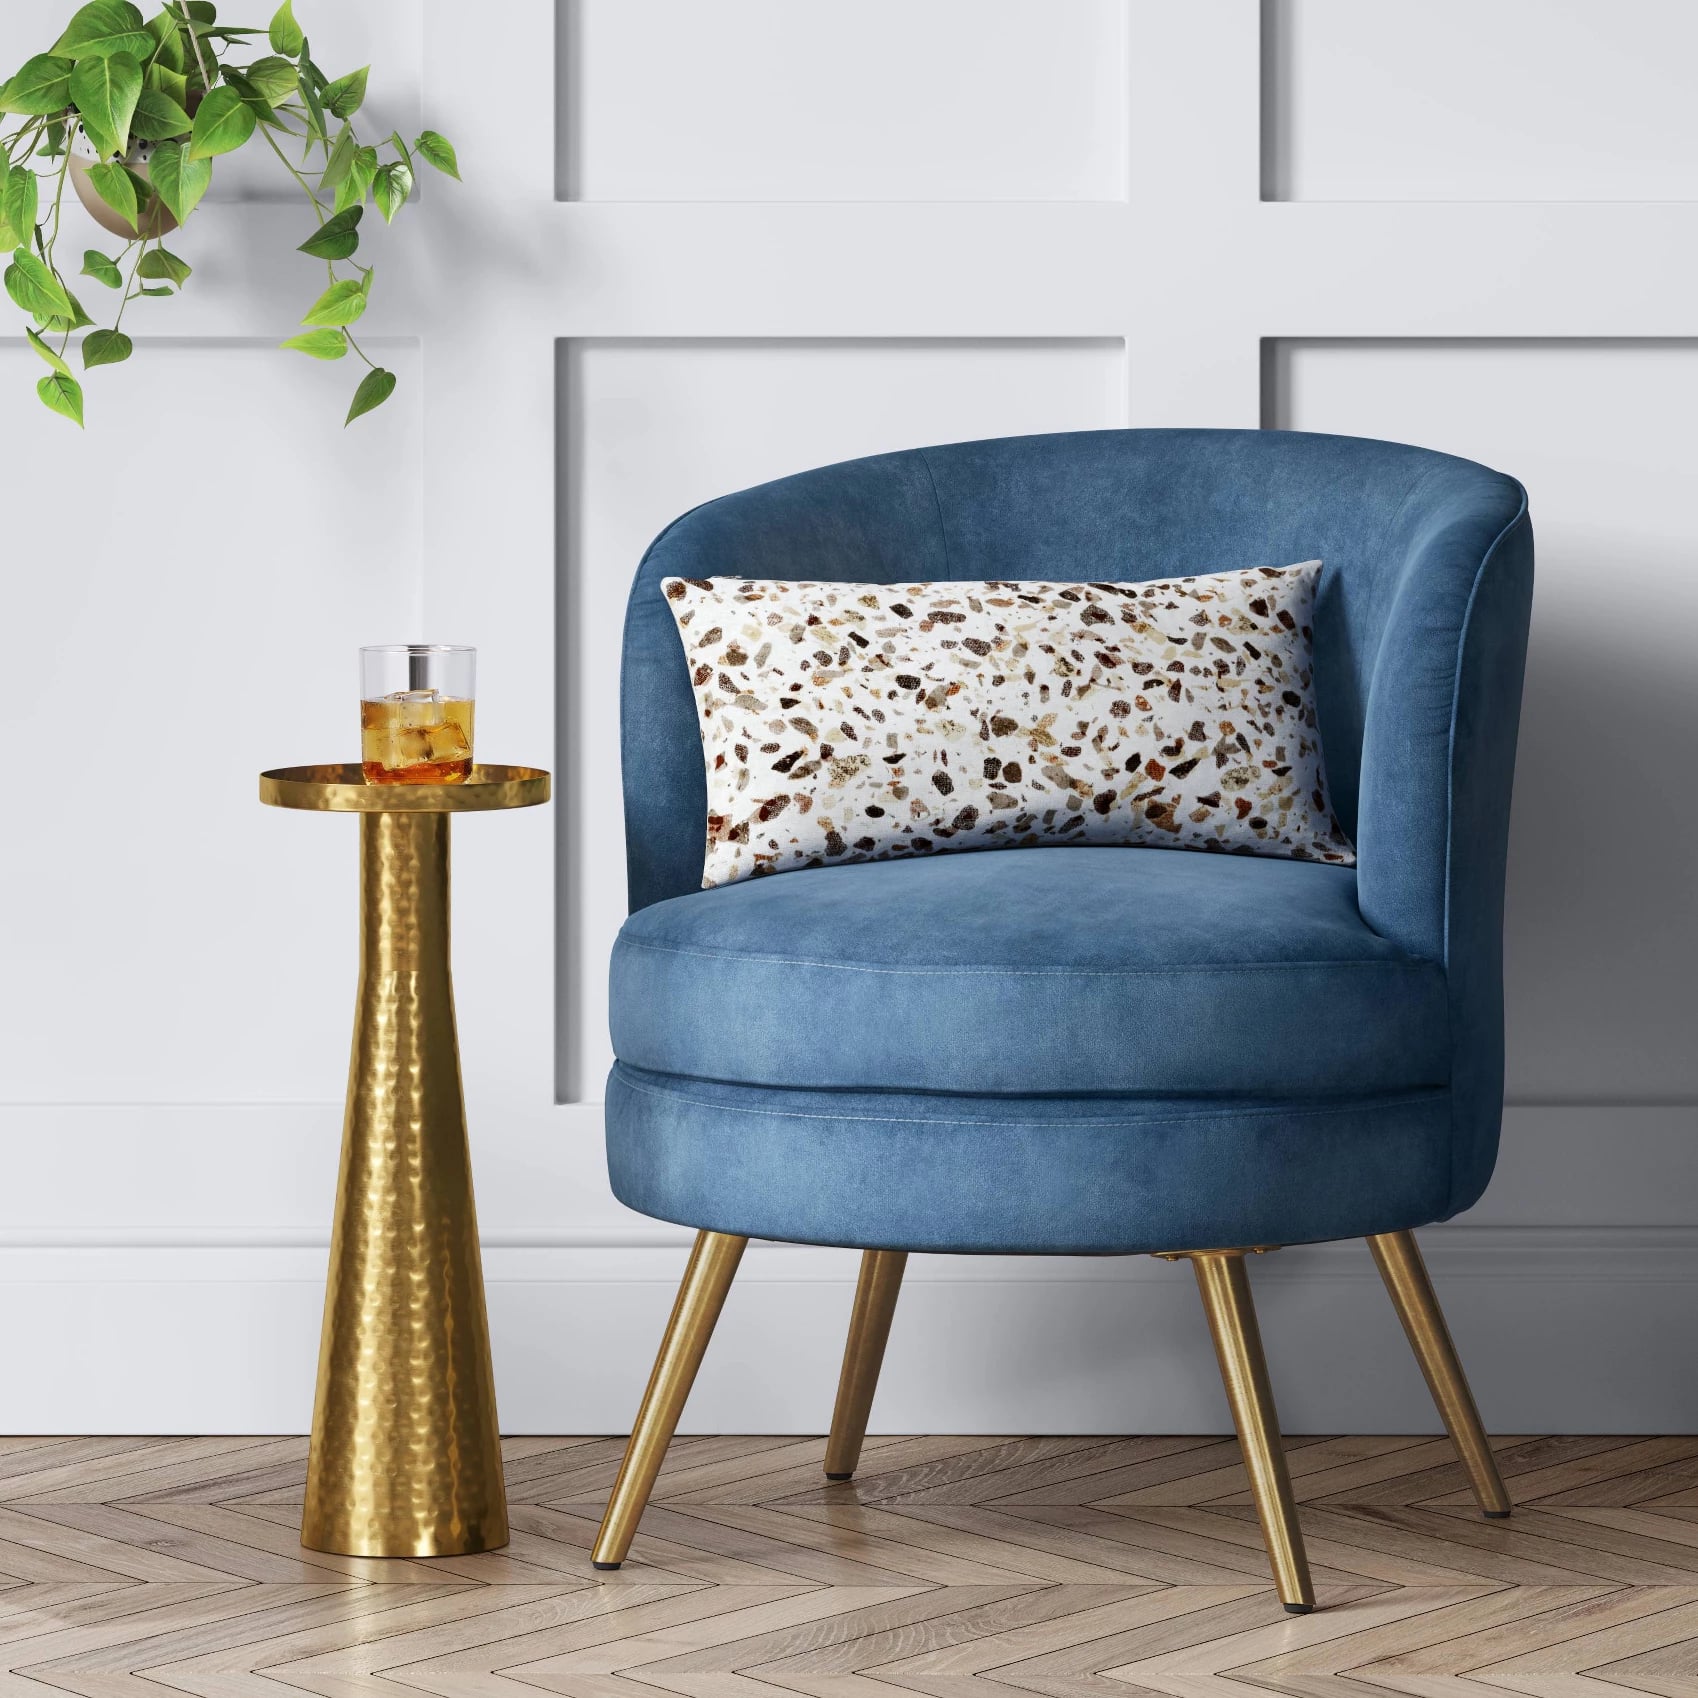 Best Furniture From Target 2020 POPSUGAR Home